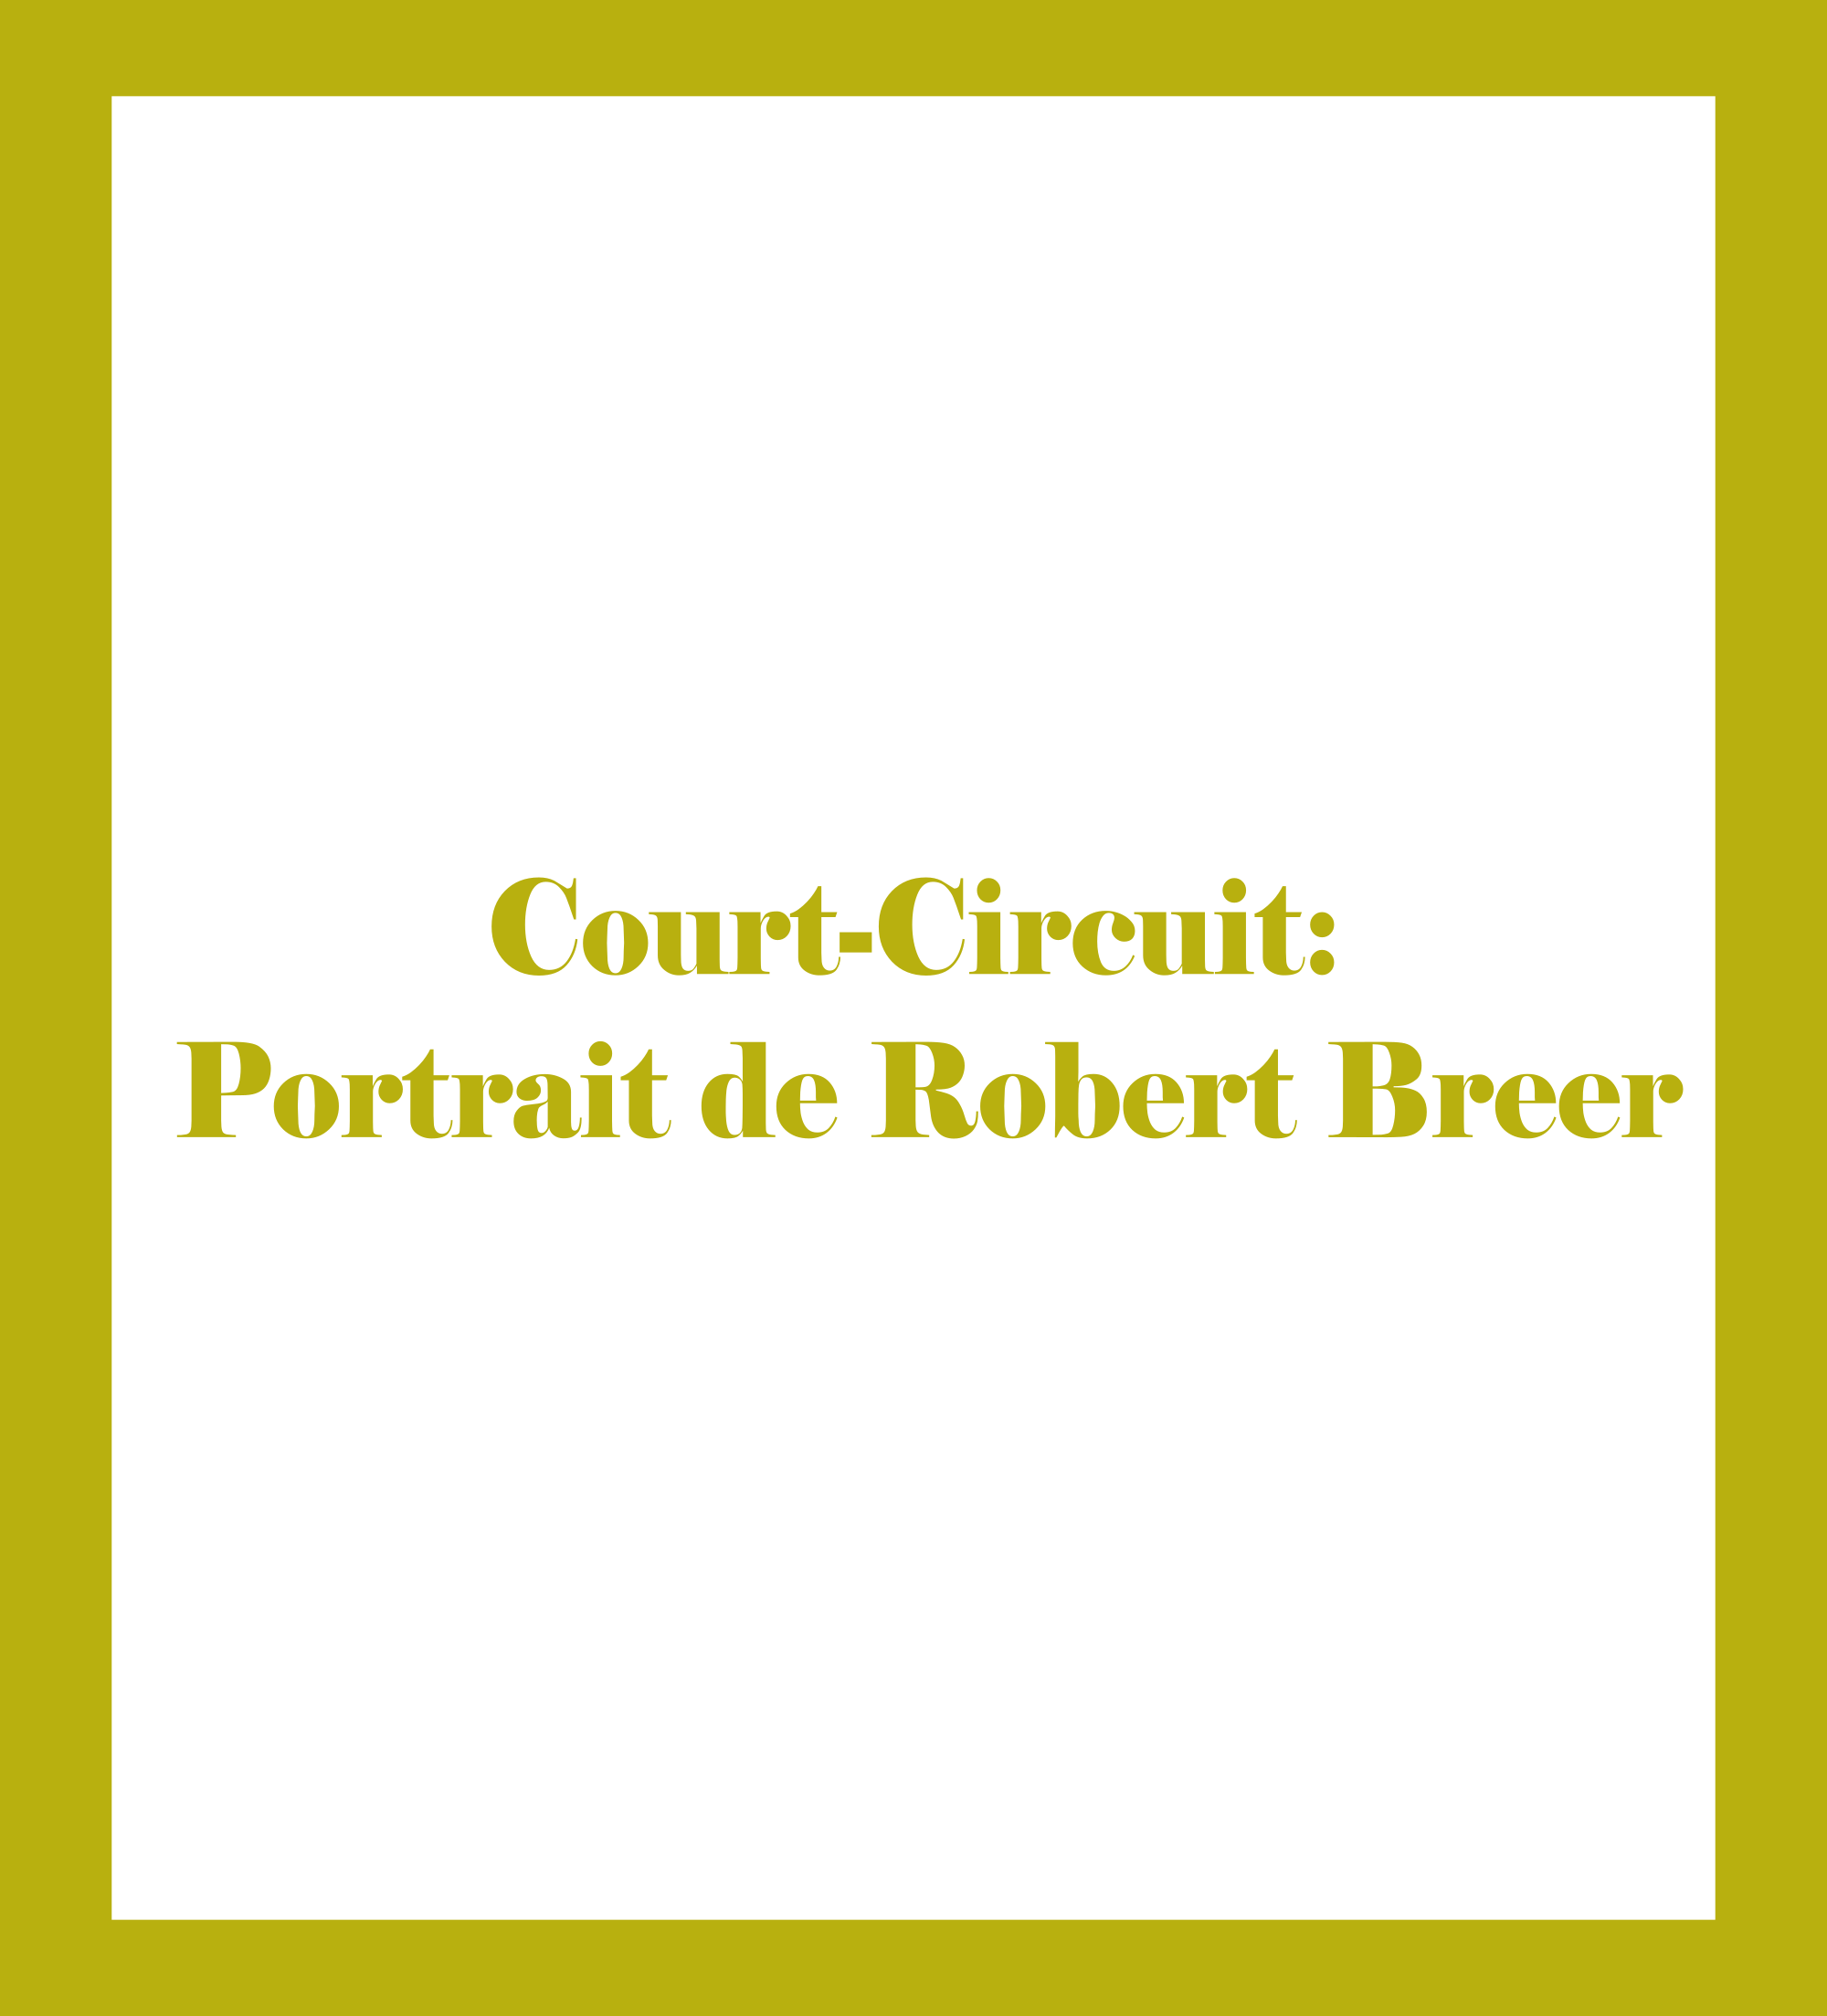 Court-Circuit: Portrait de Robert Breer